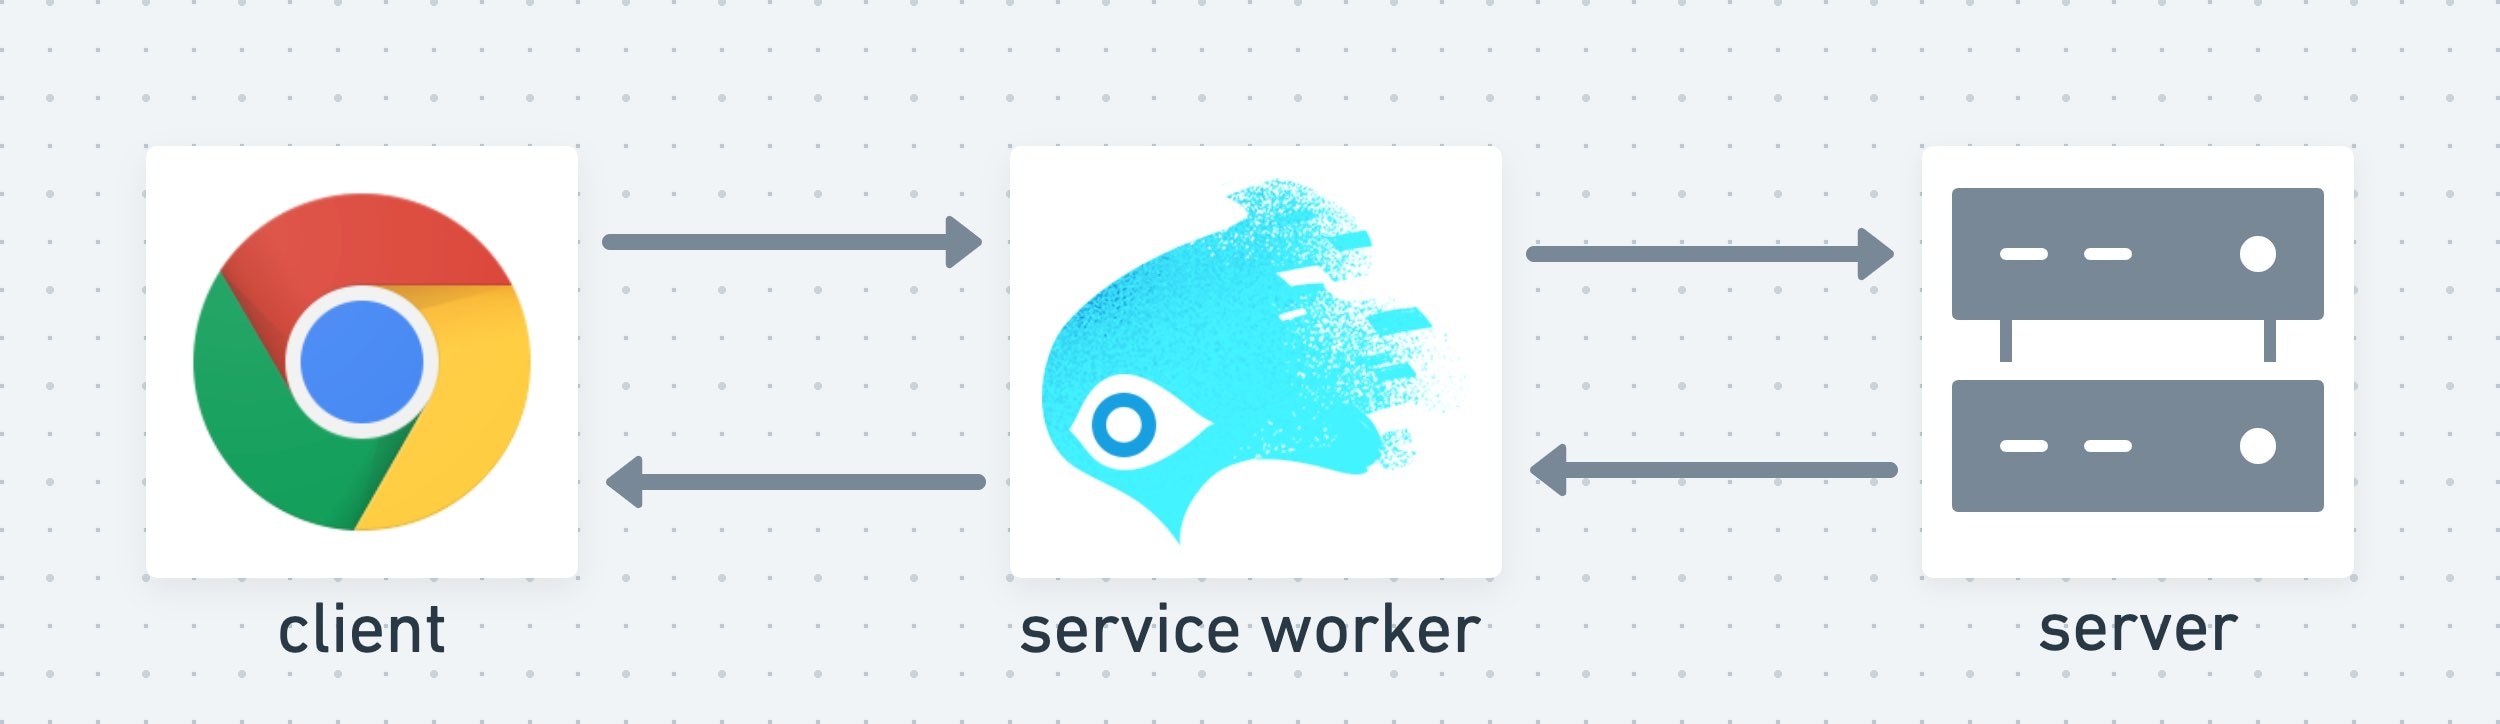 Skrypt service worker pełni rolę pośredniej między klientem a serwerem.